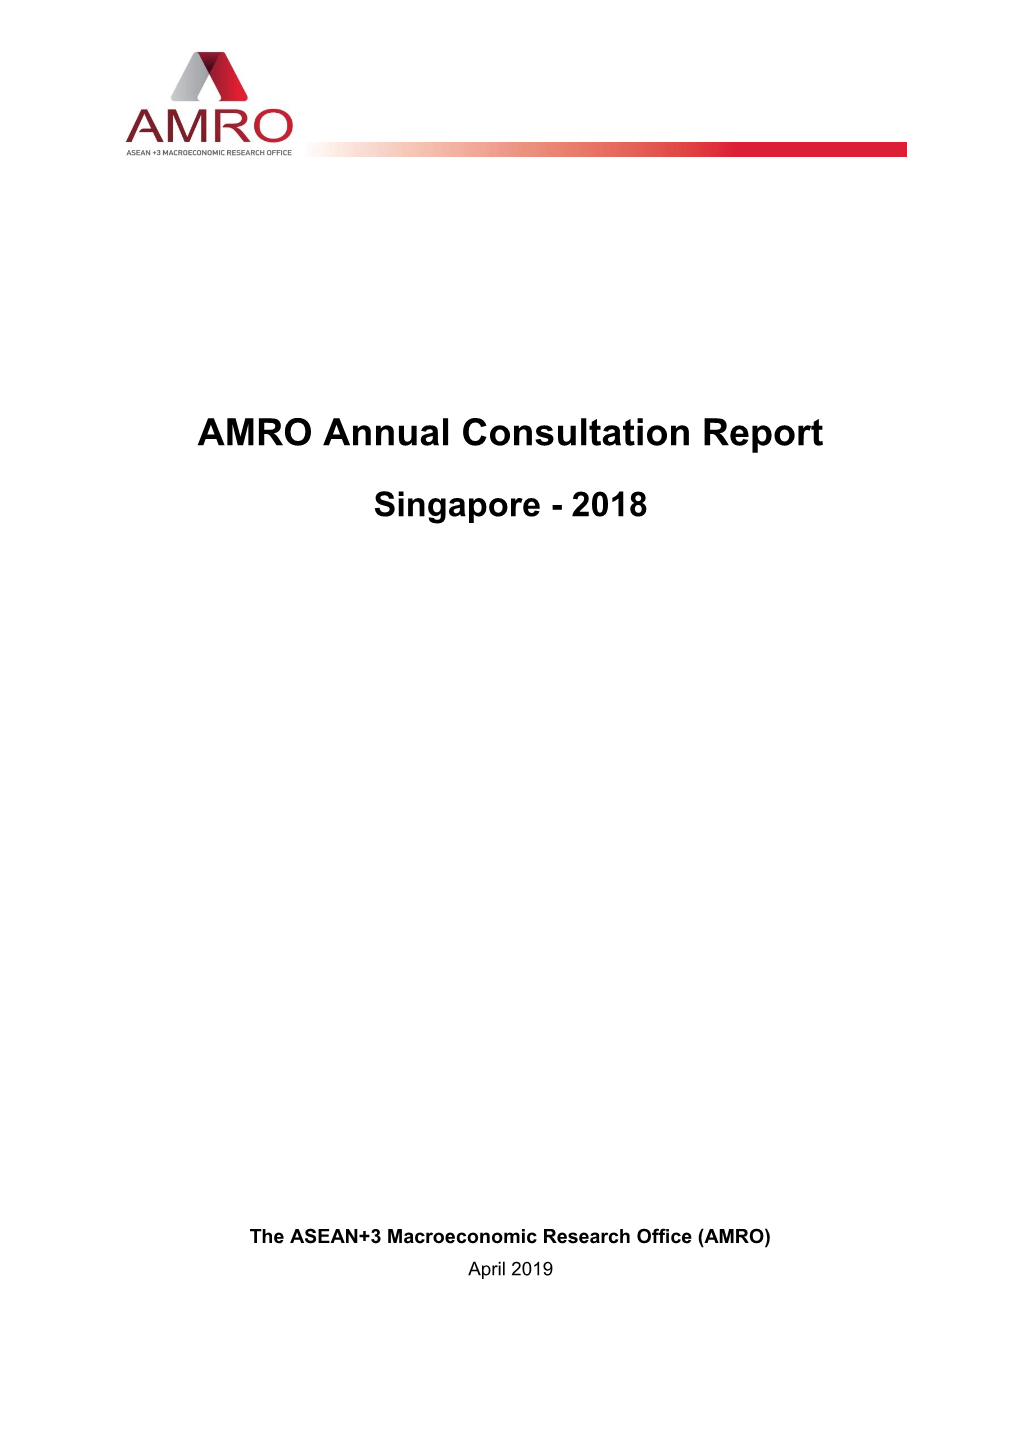 AMRO Annual Consultation Report Singapore